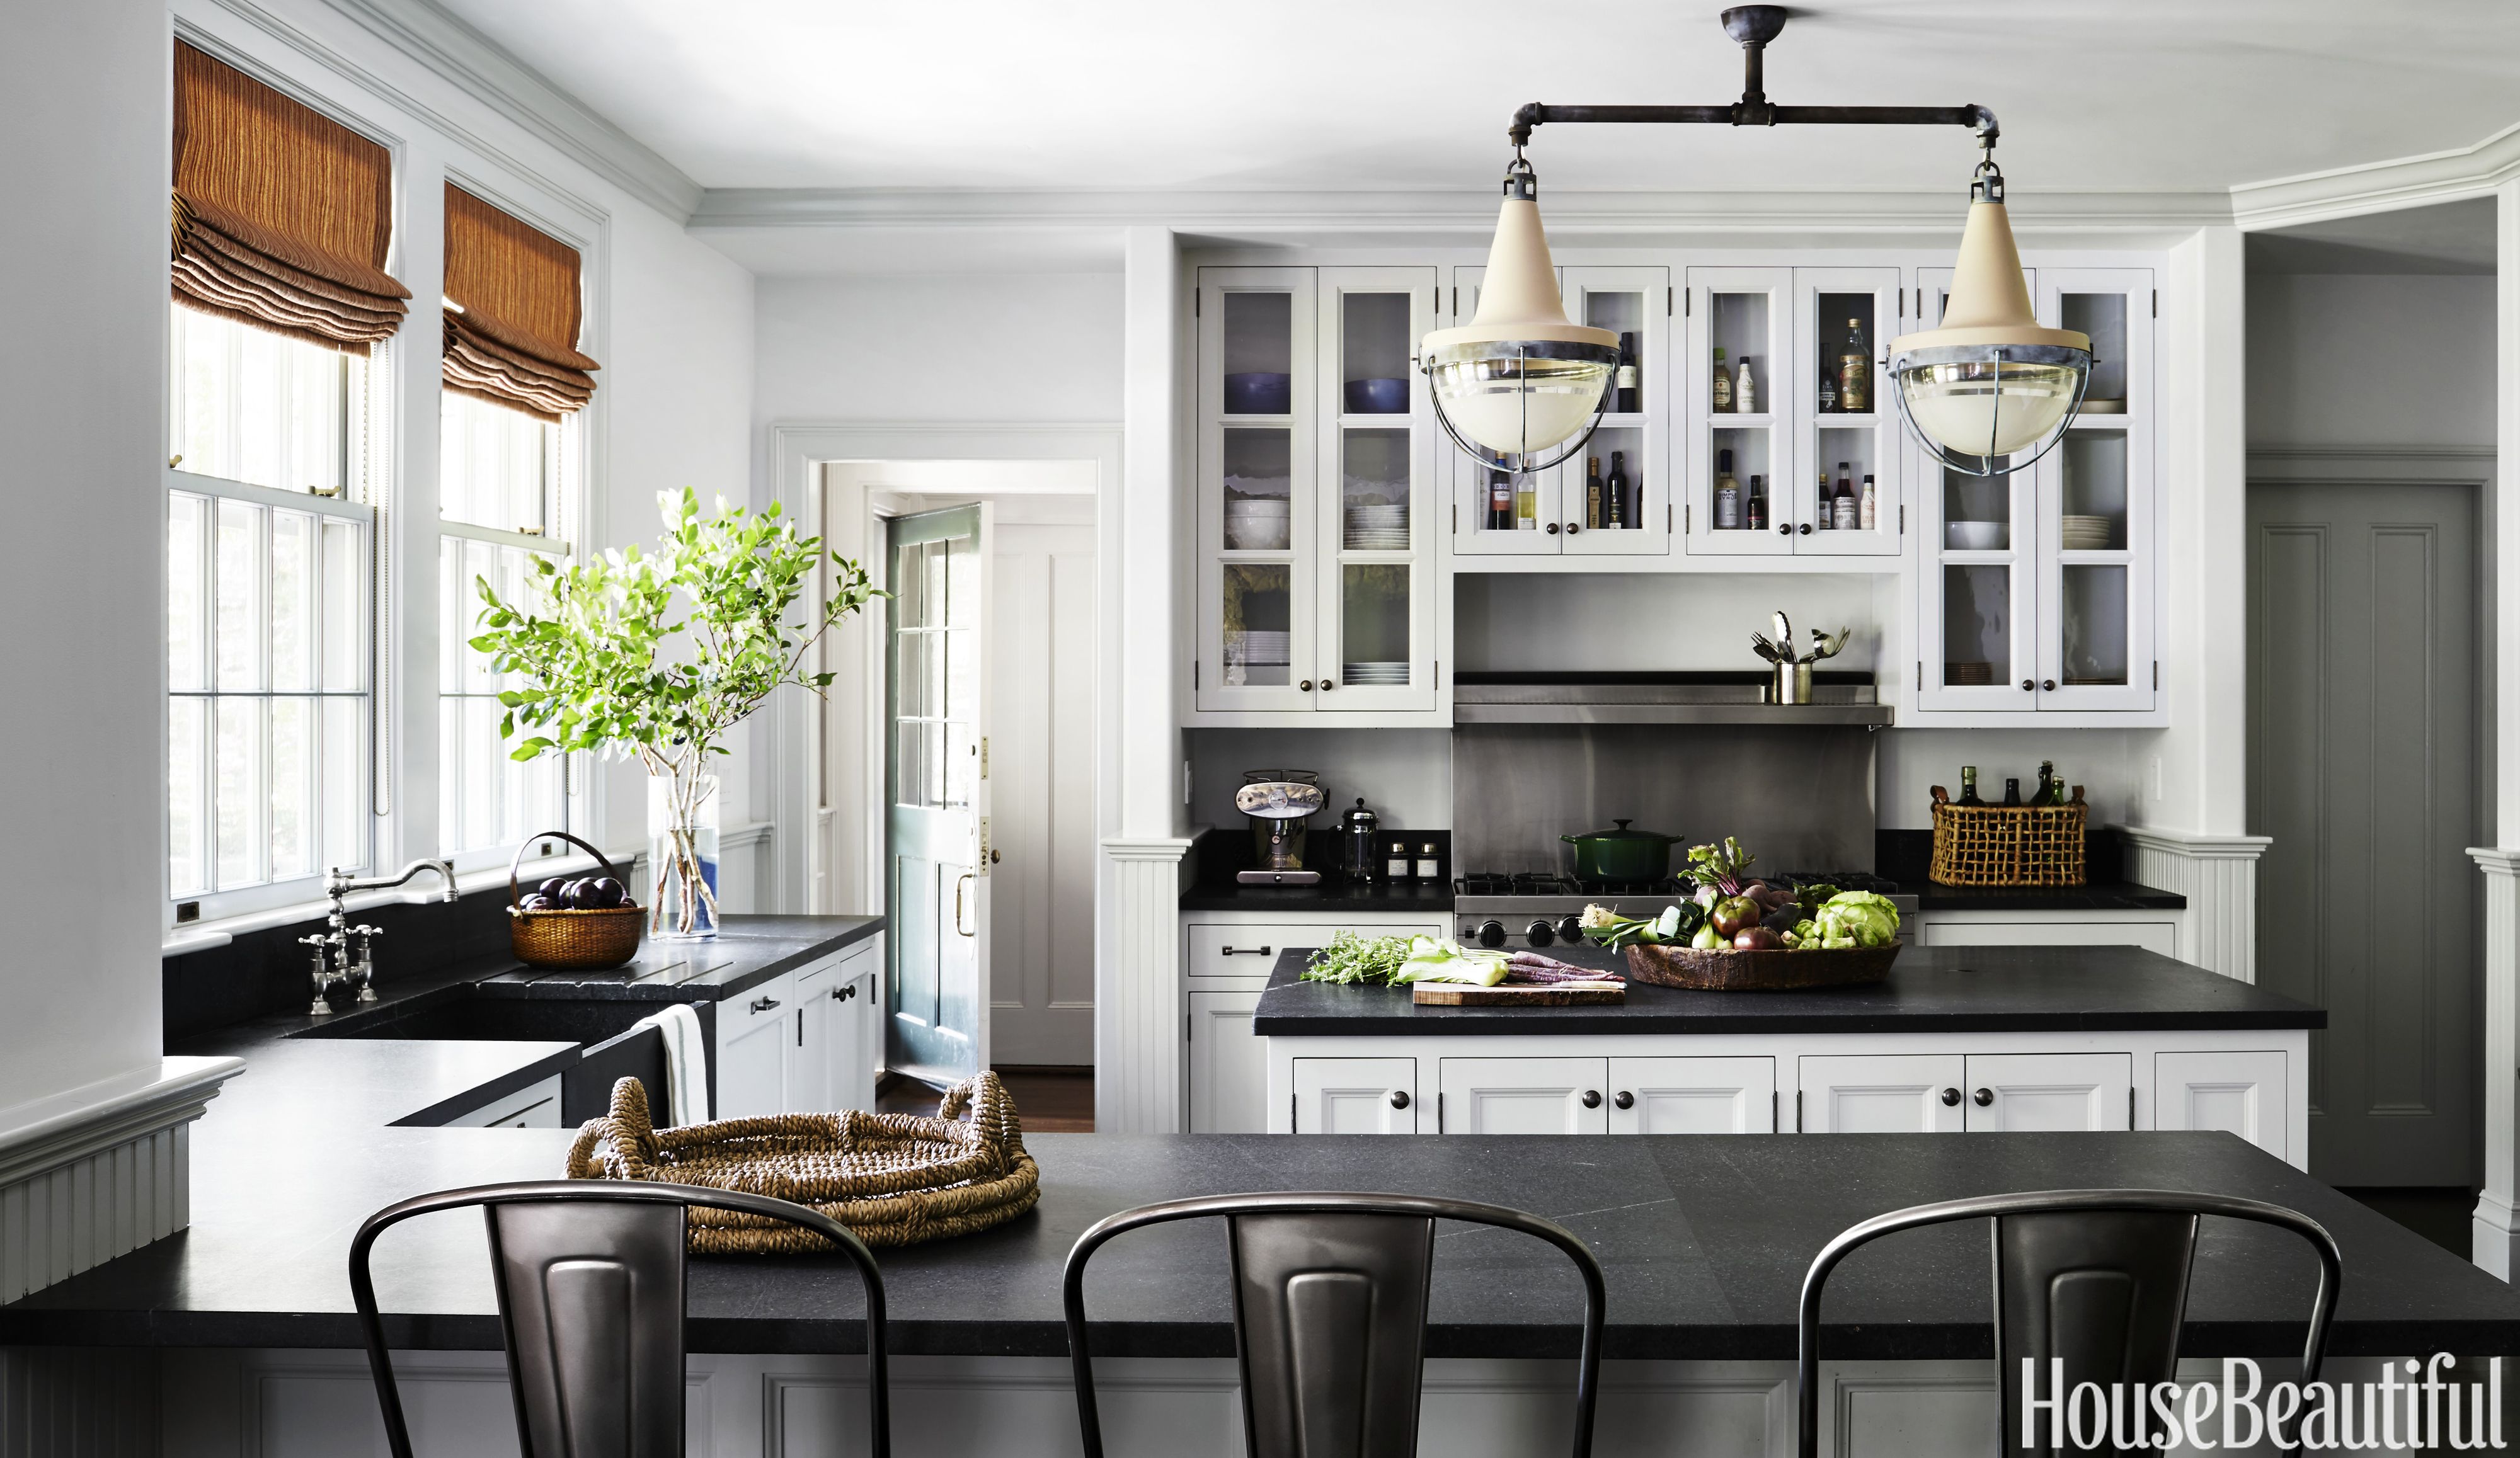 10 Grey Kitchen Ideas Best Gray Kitchen Designs And Inspiration